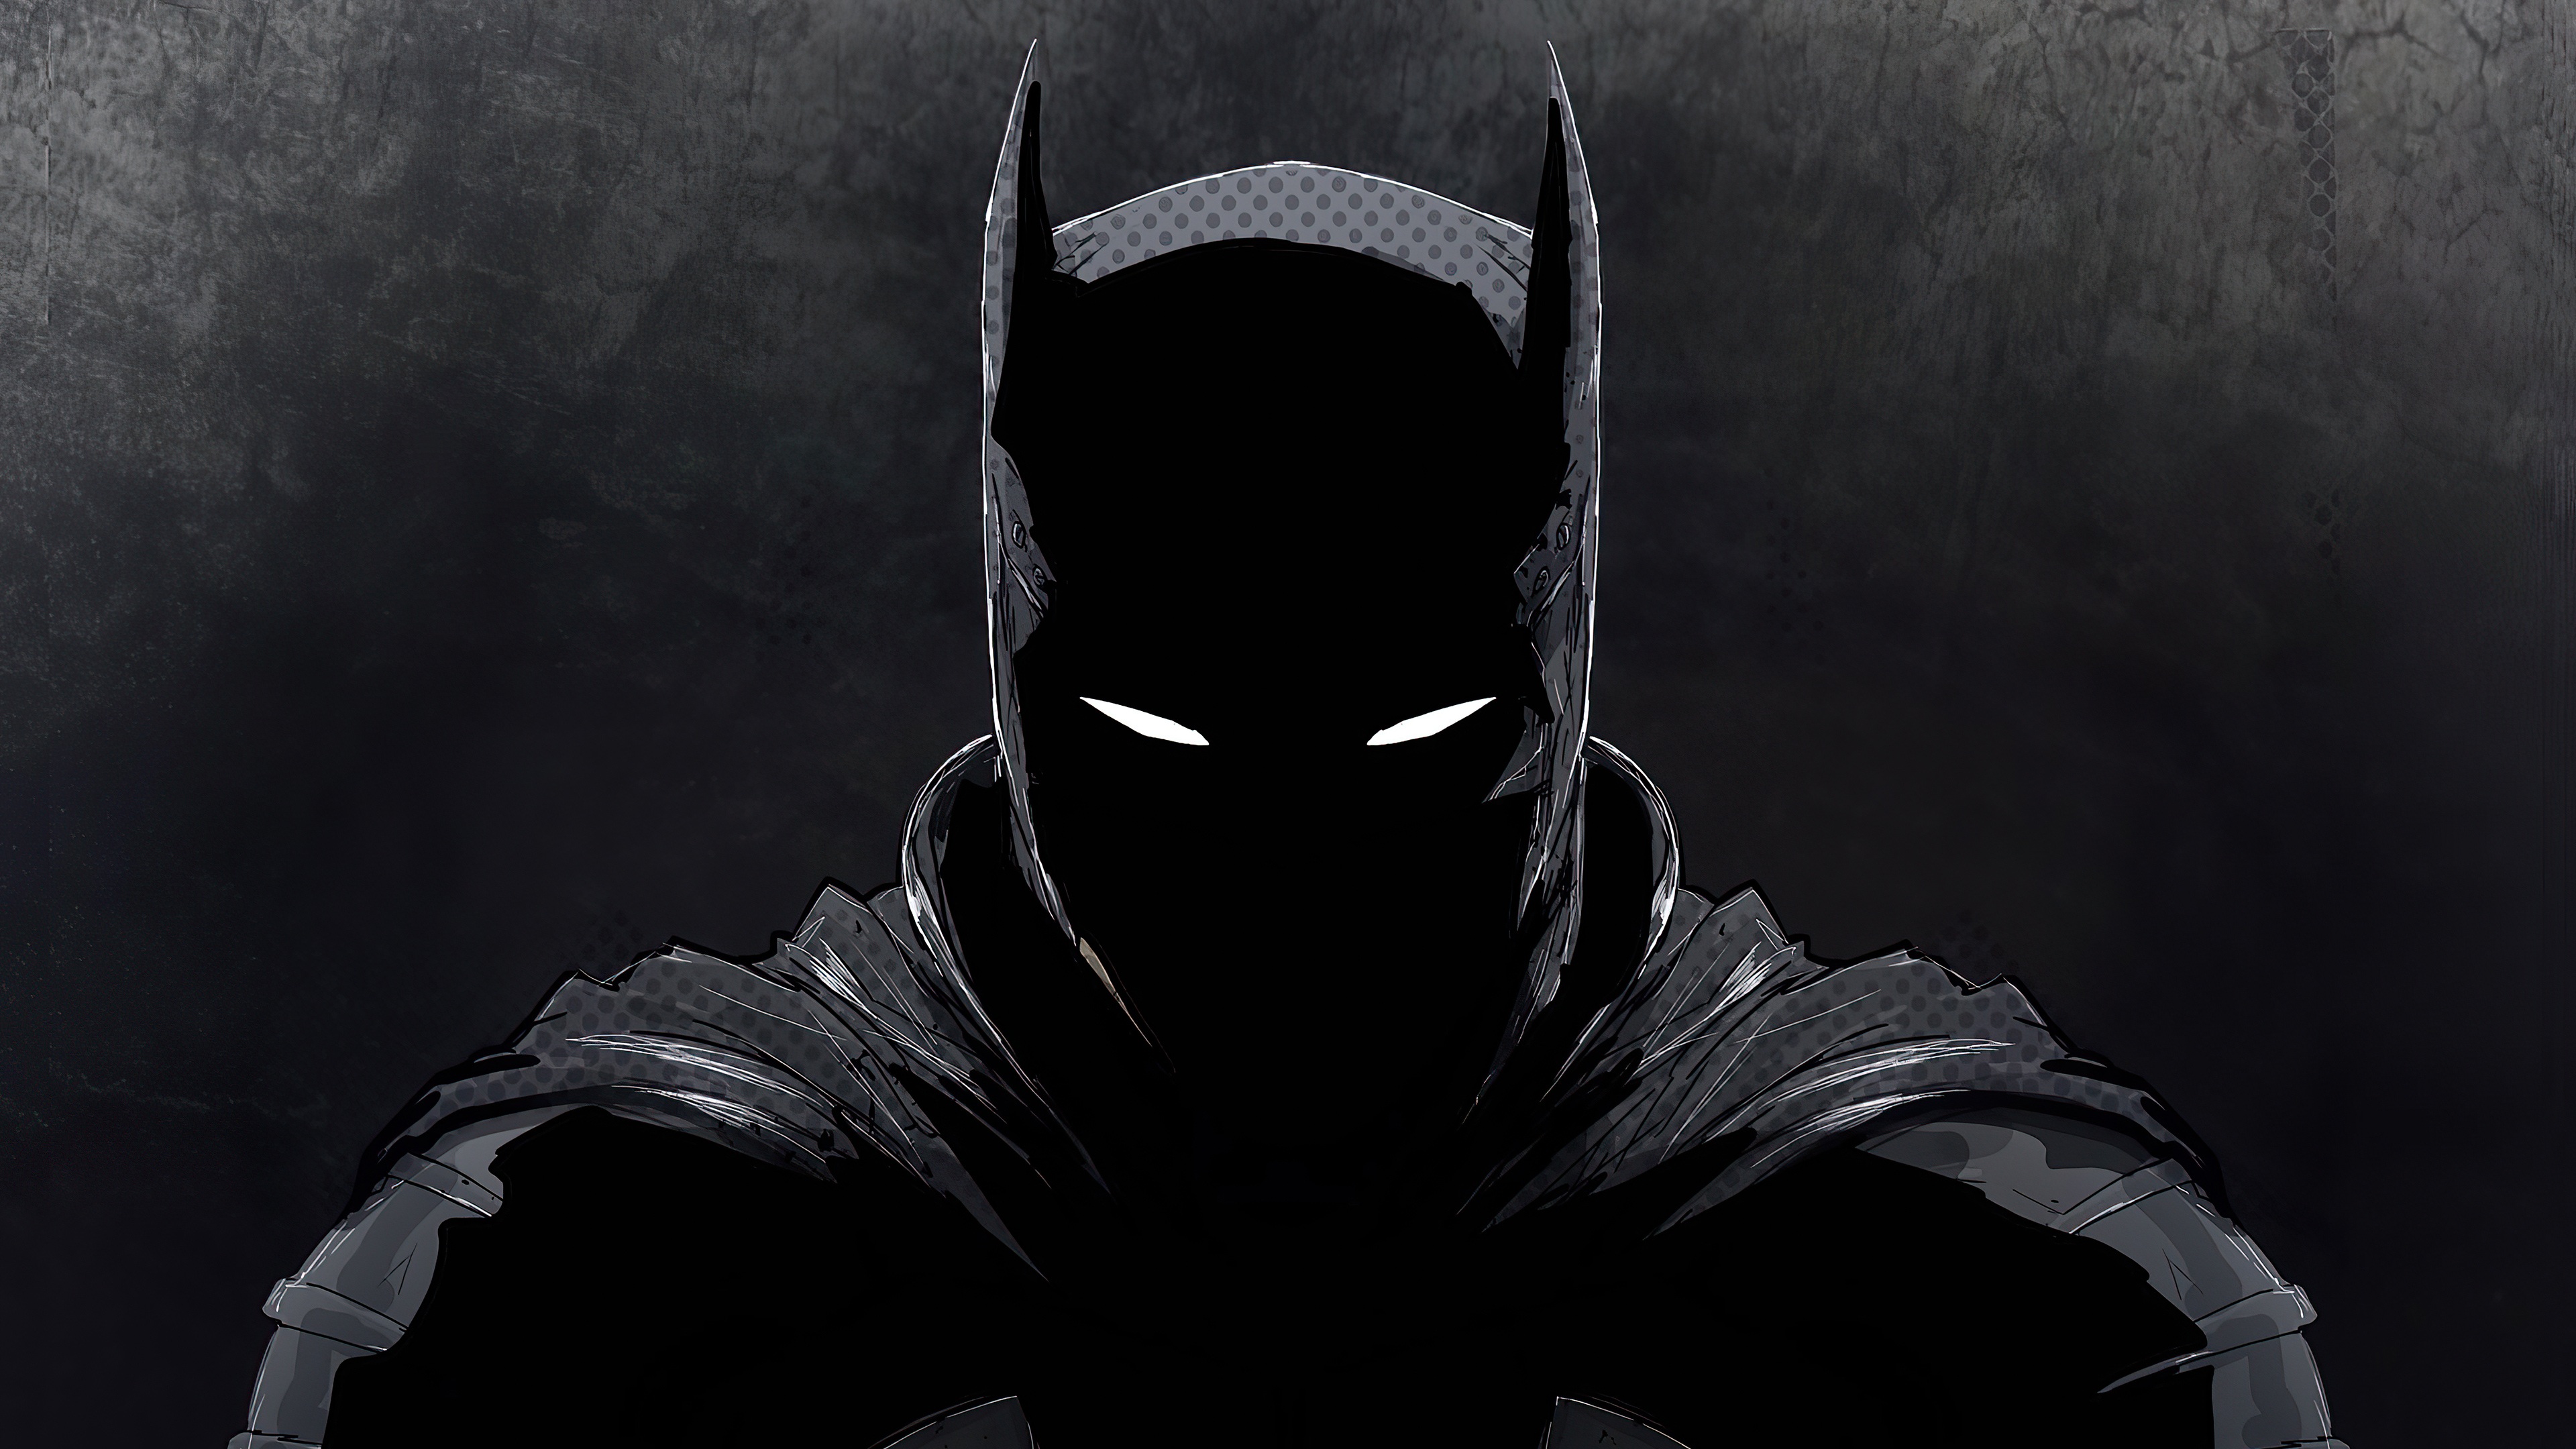 Hình nền Batman tối với những hình ảnh anh hùng đầy quyết liệt và phong cách sẽ khiến bạn cảm thấy như đang lên đường giải cứu thành phố. Hãy tìm hiểu thêm về những bộ phim Batman đình đám và trải nghiệm những hình ảnh tối tuyệt đẹp này trên máy tính của bạn.